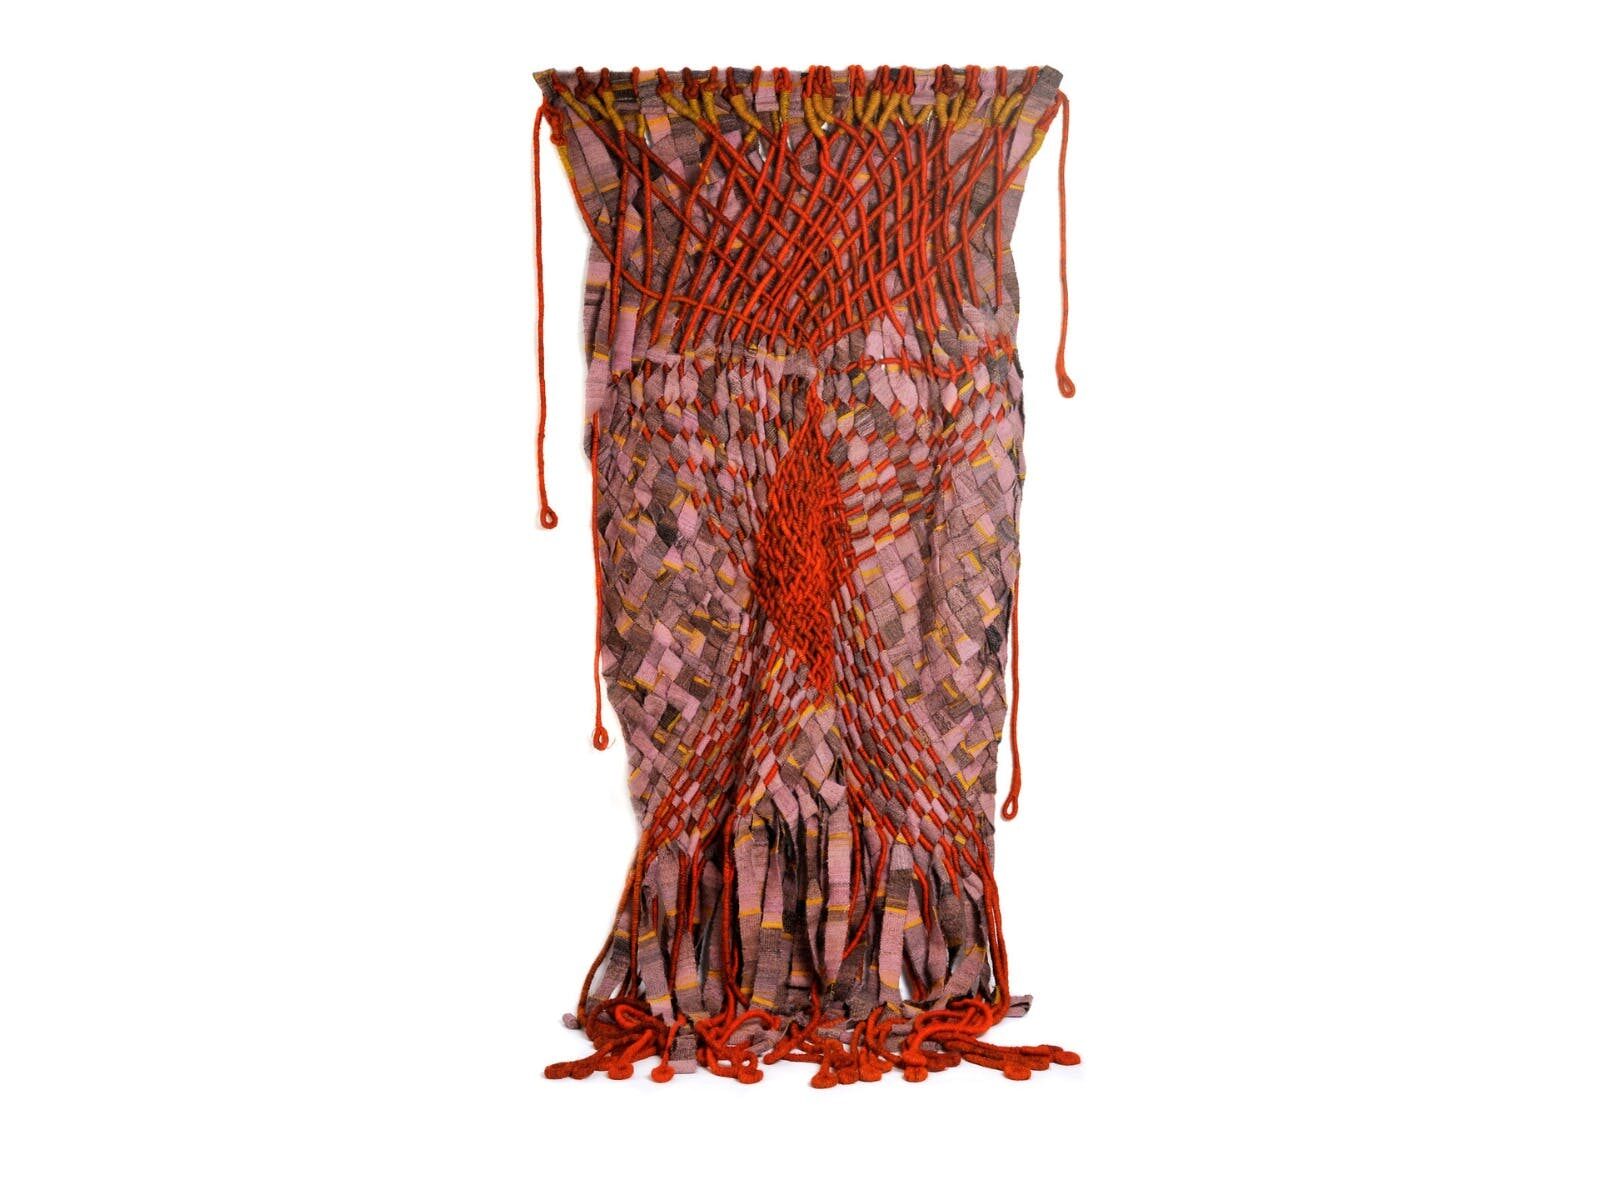 Olga de Amaral, Coraza En Dos Colores 1973, dyed horse hair, sisal, pink hand spun wool, bound rope